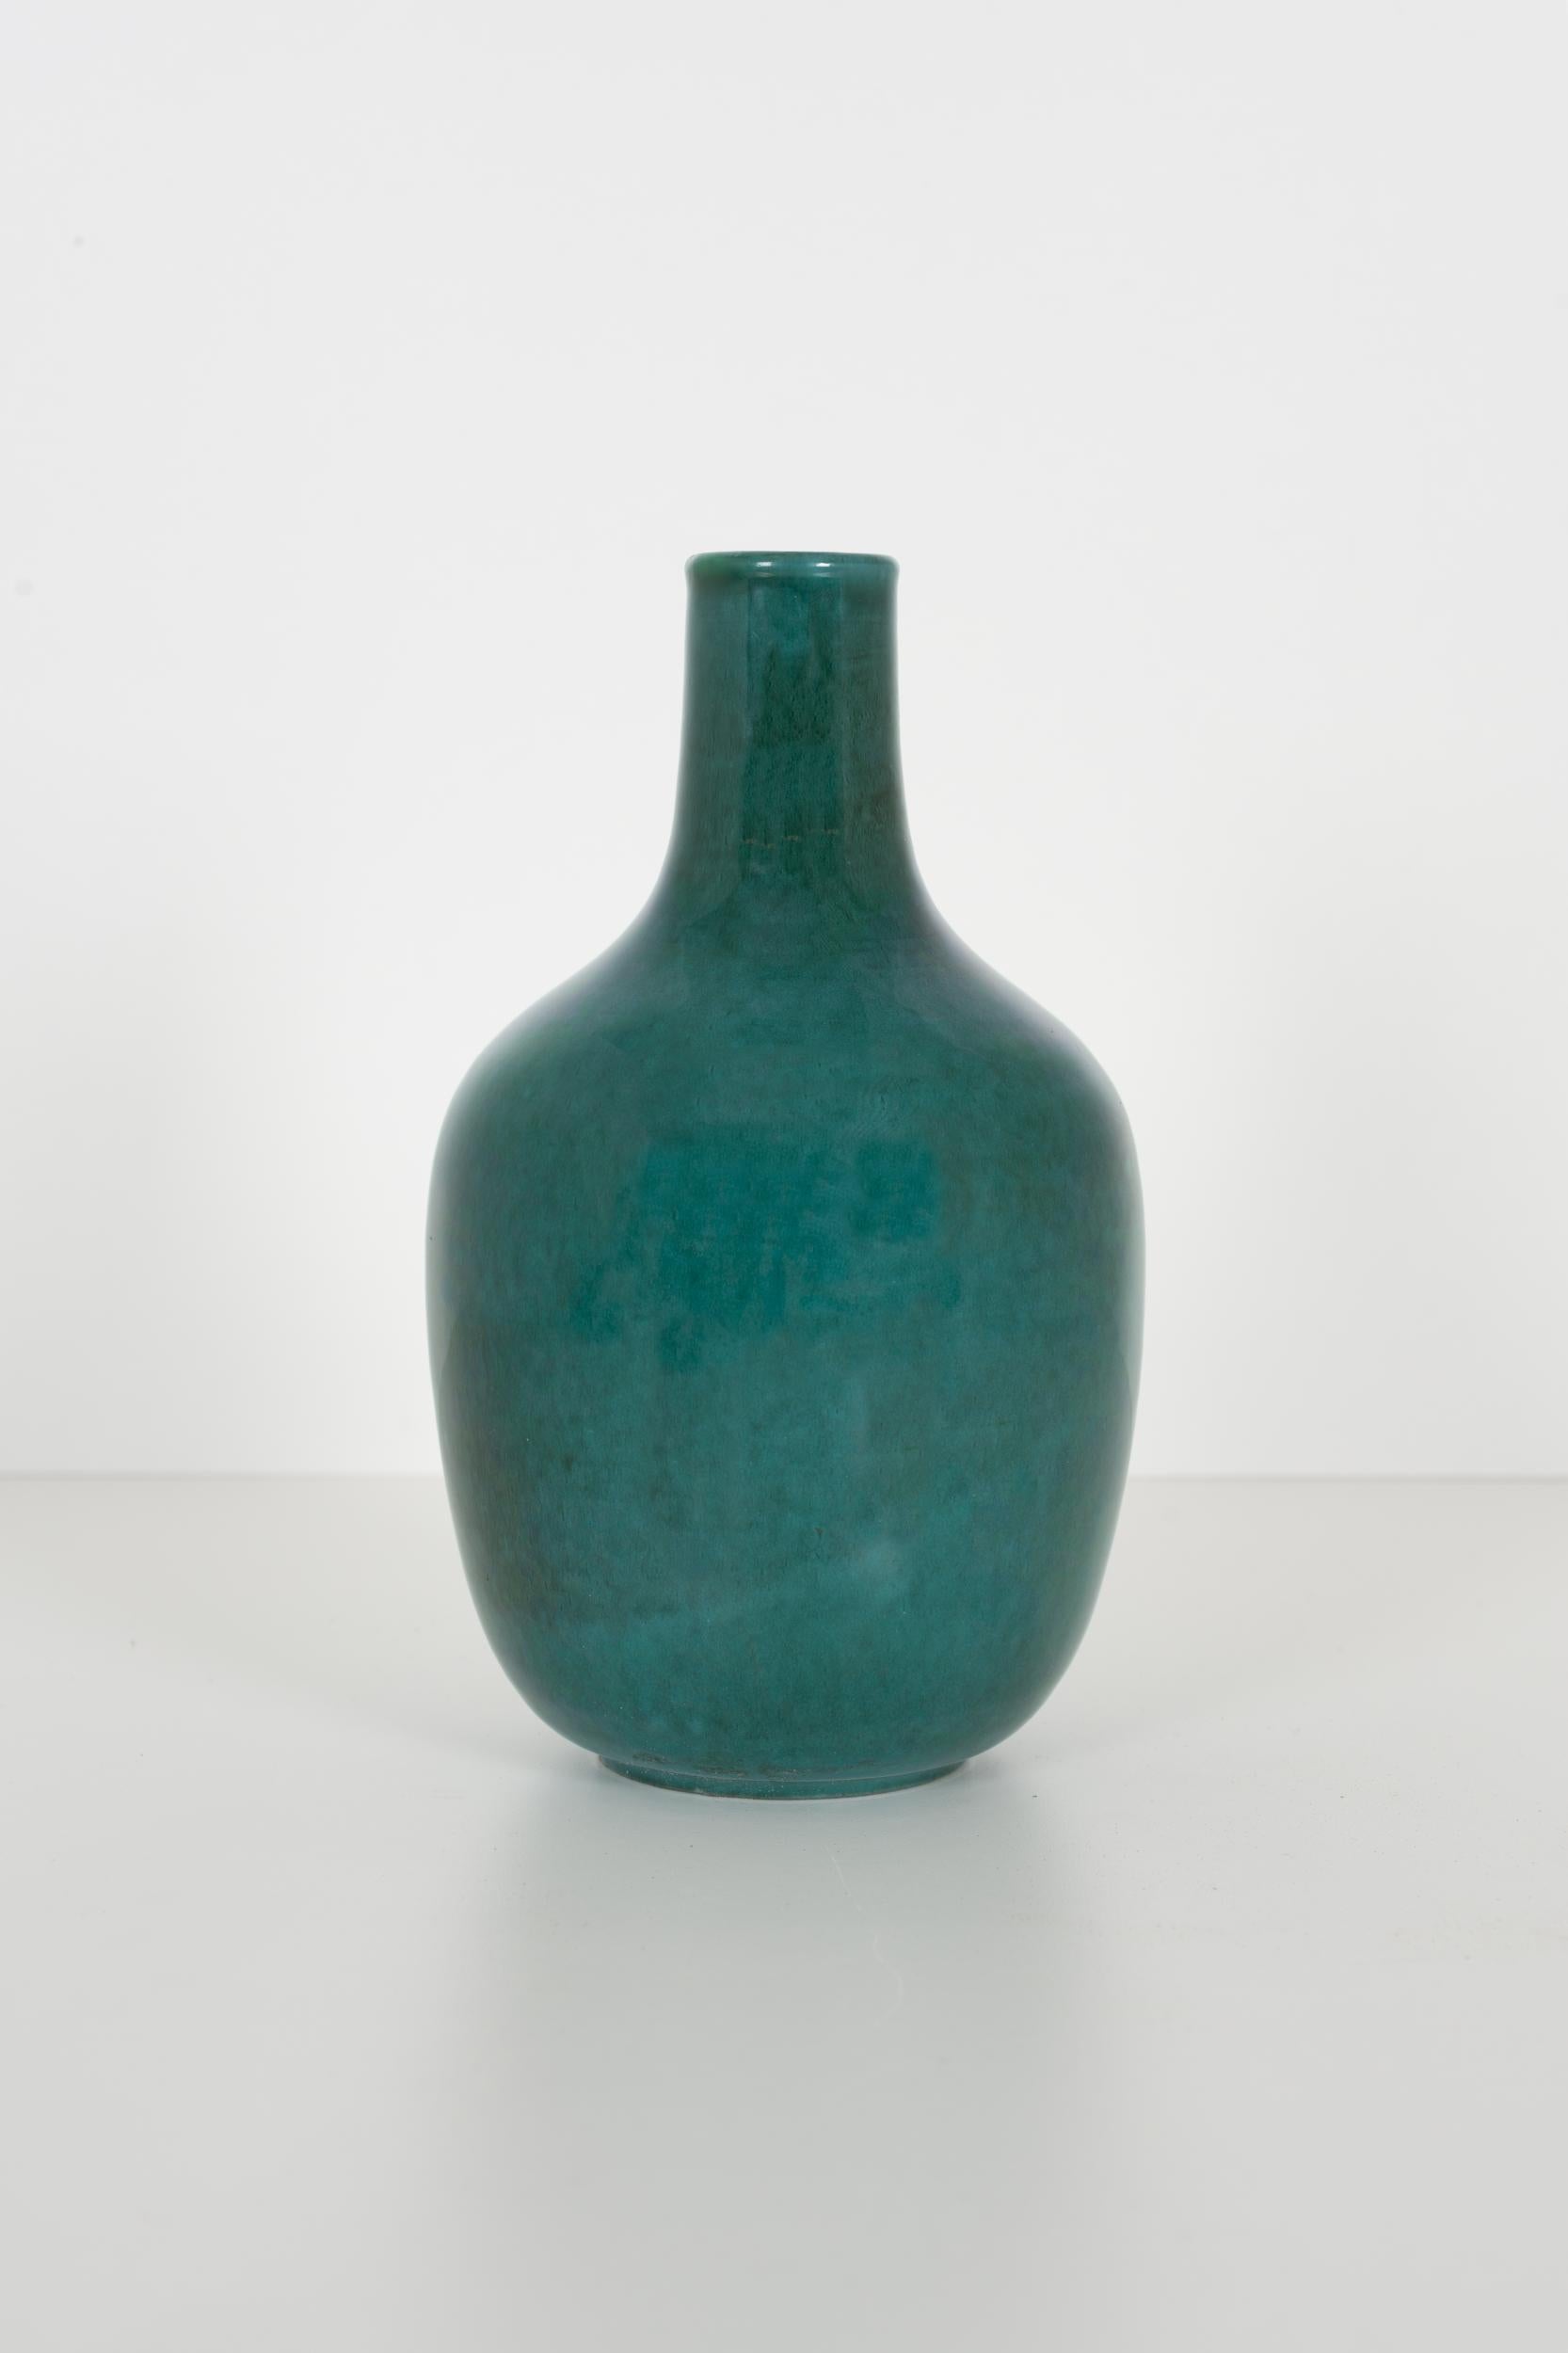 Early Fantoni vase, ceramic with green glaze.
[Signed underside Fantoni Italy with logo].